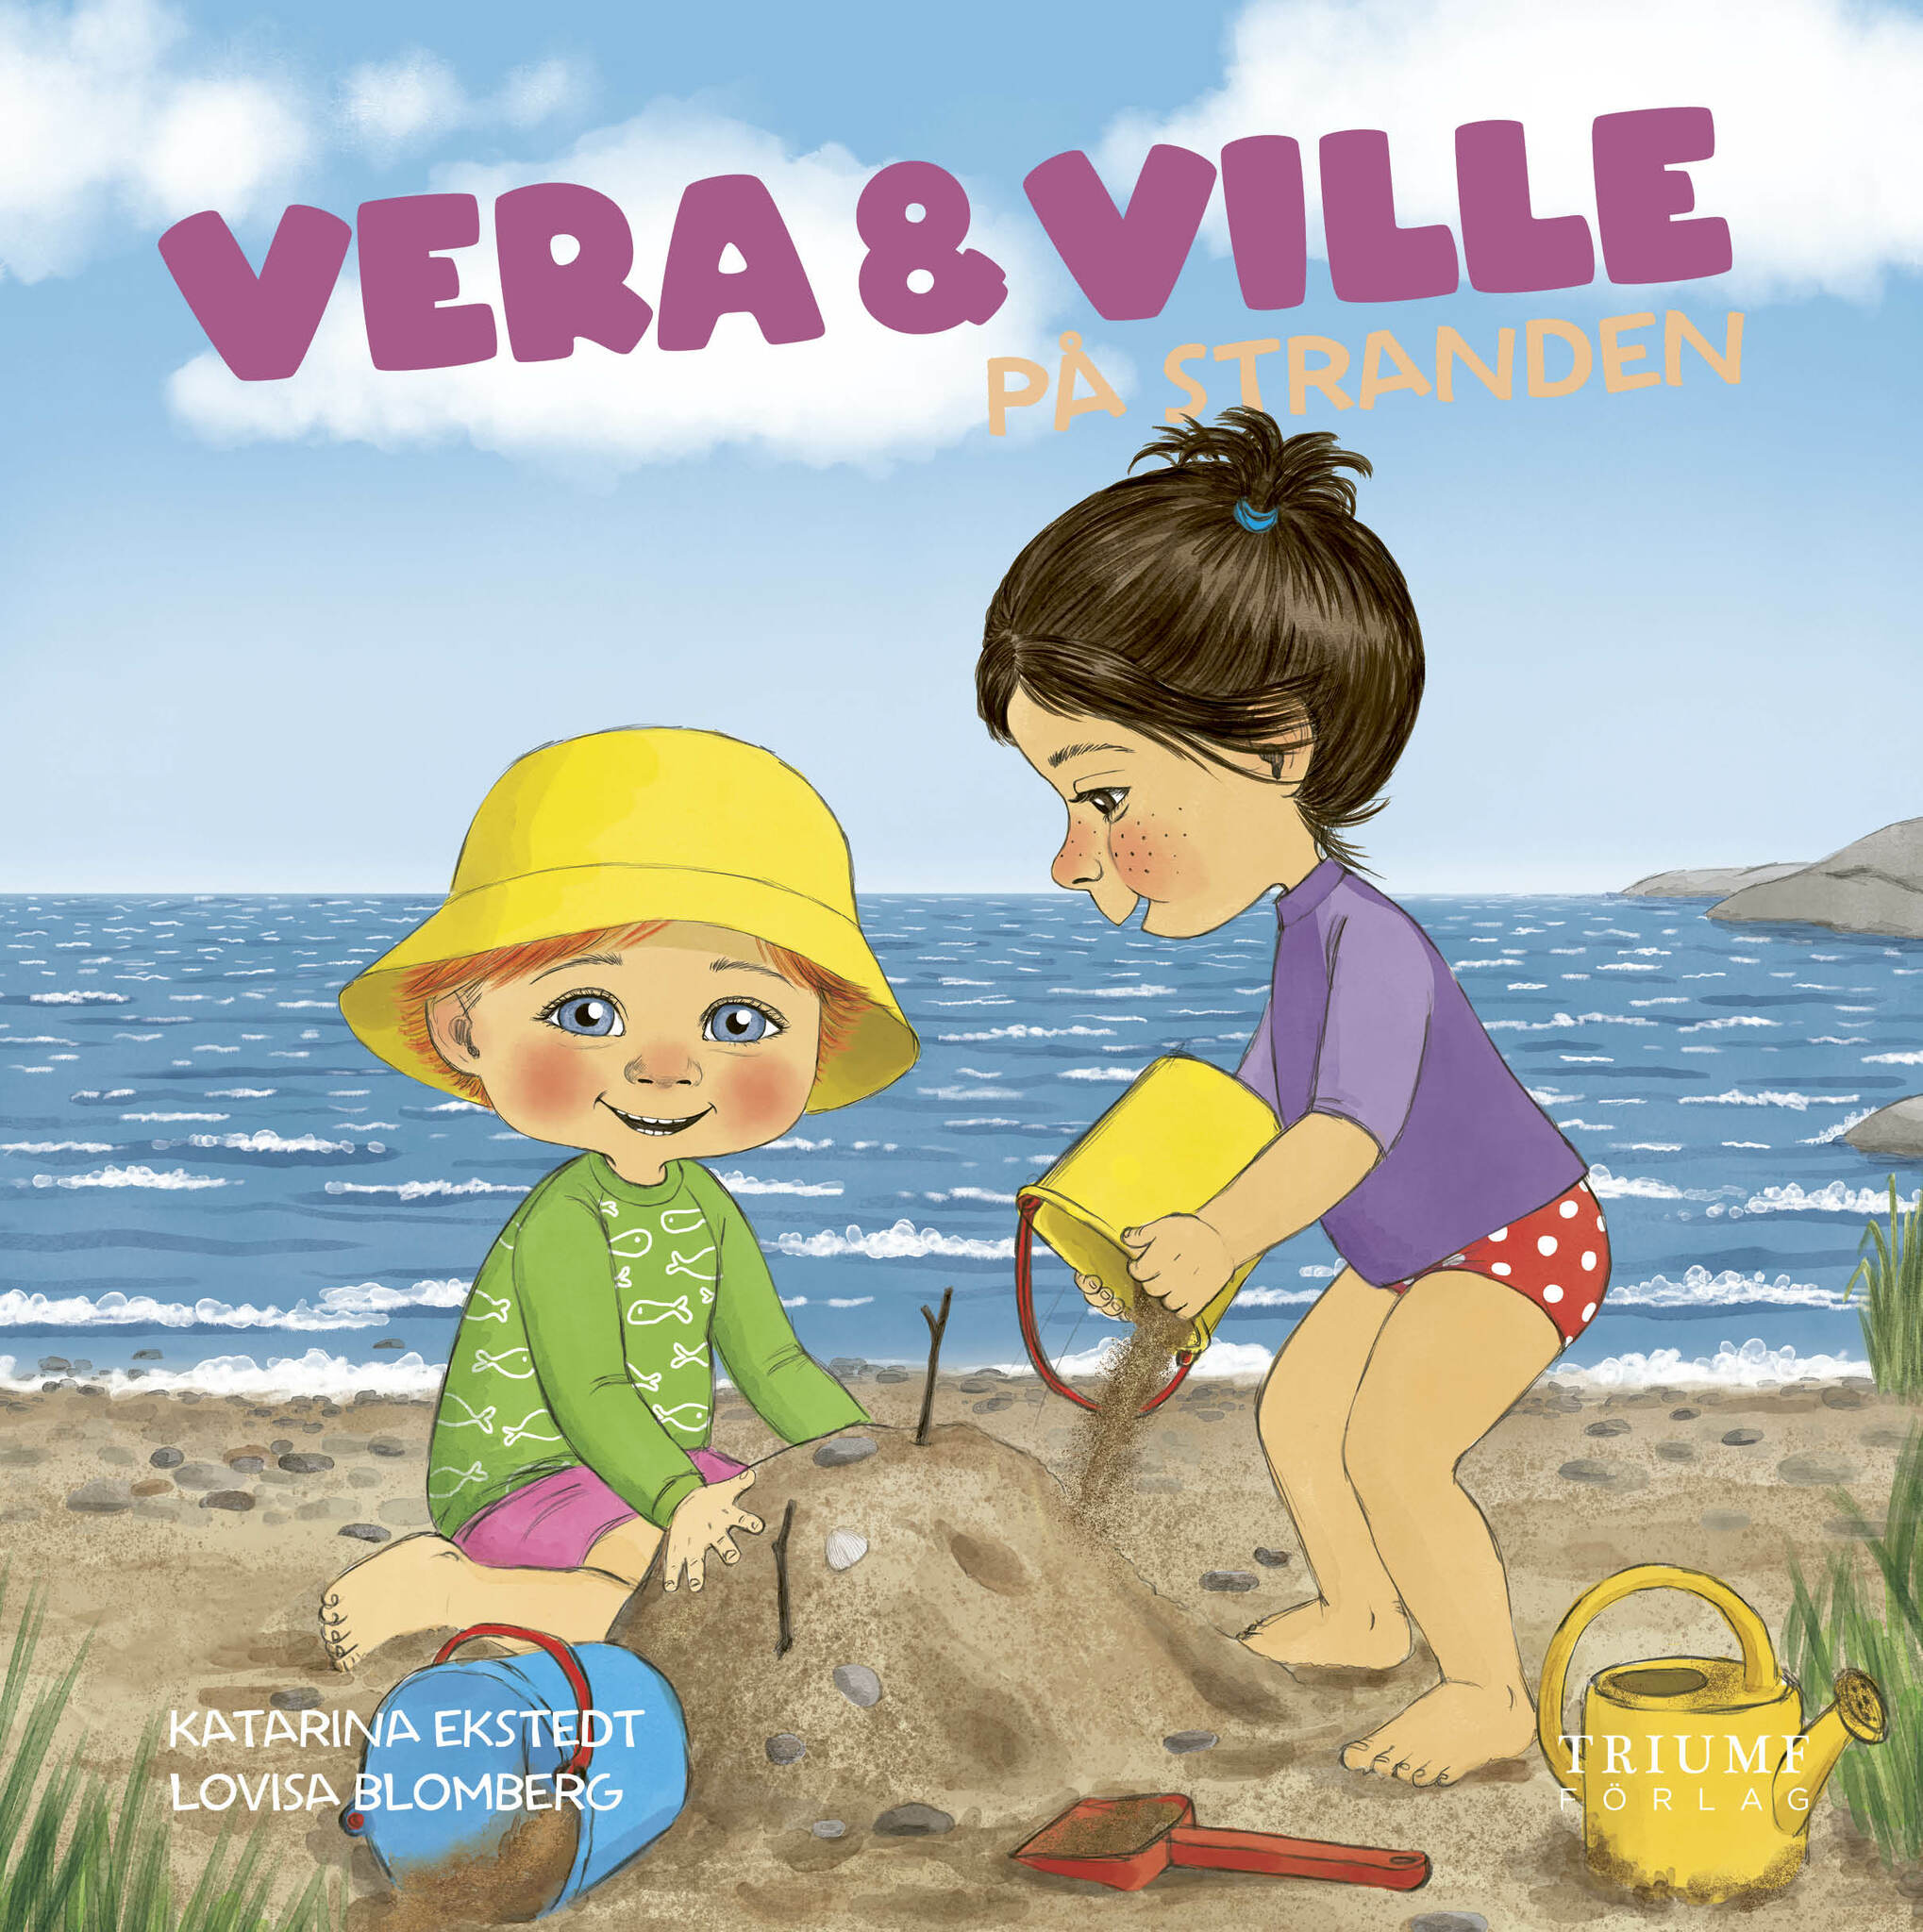 "Vera och Ville på stranden" av Katarina Ekstedt